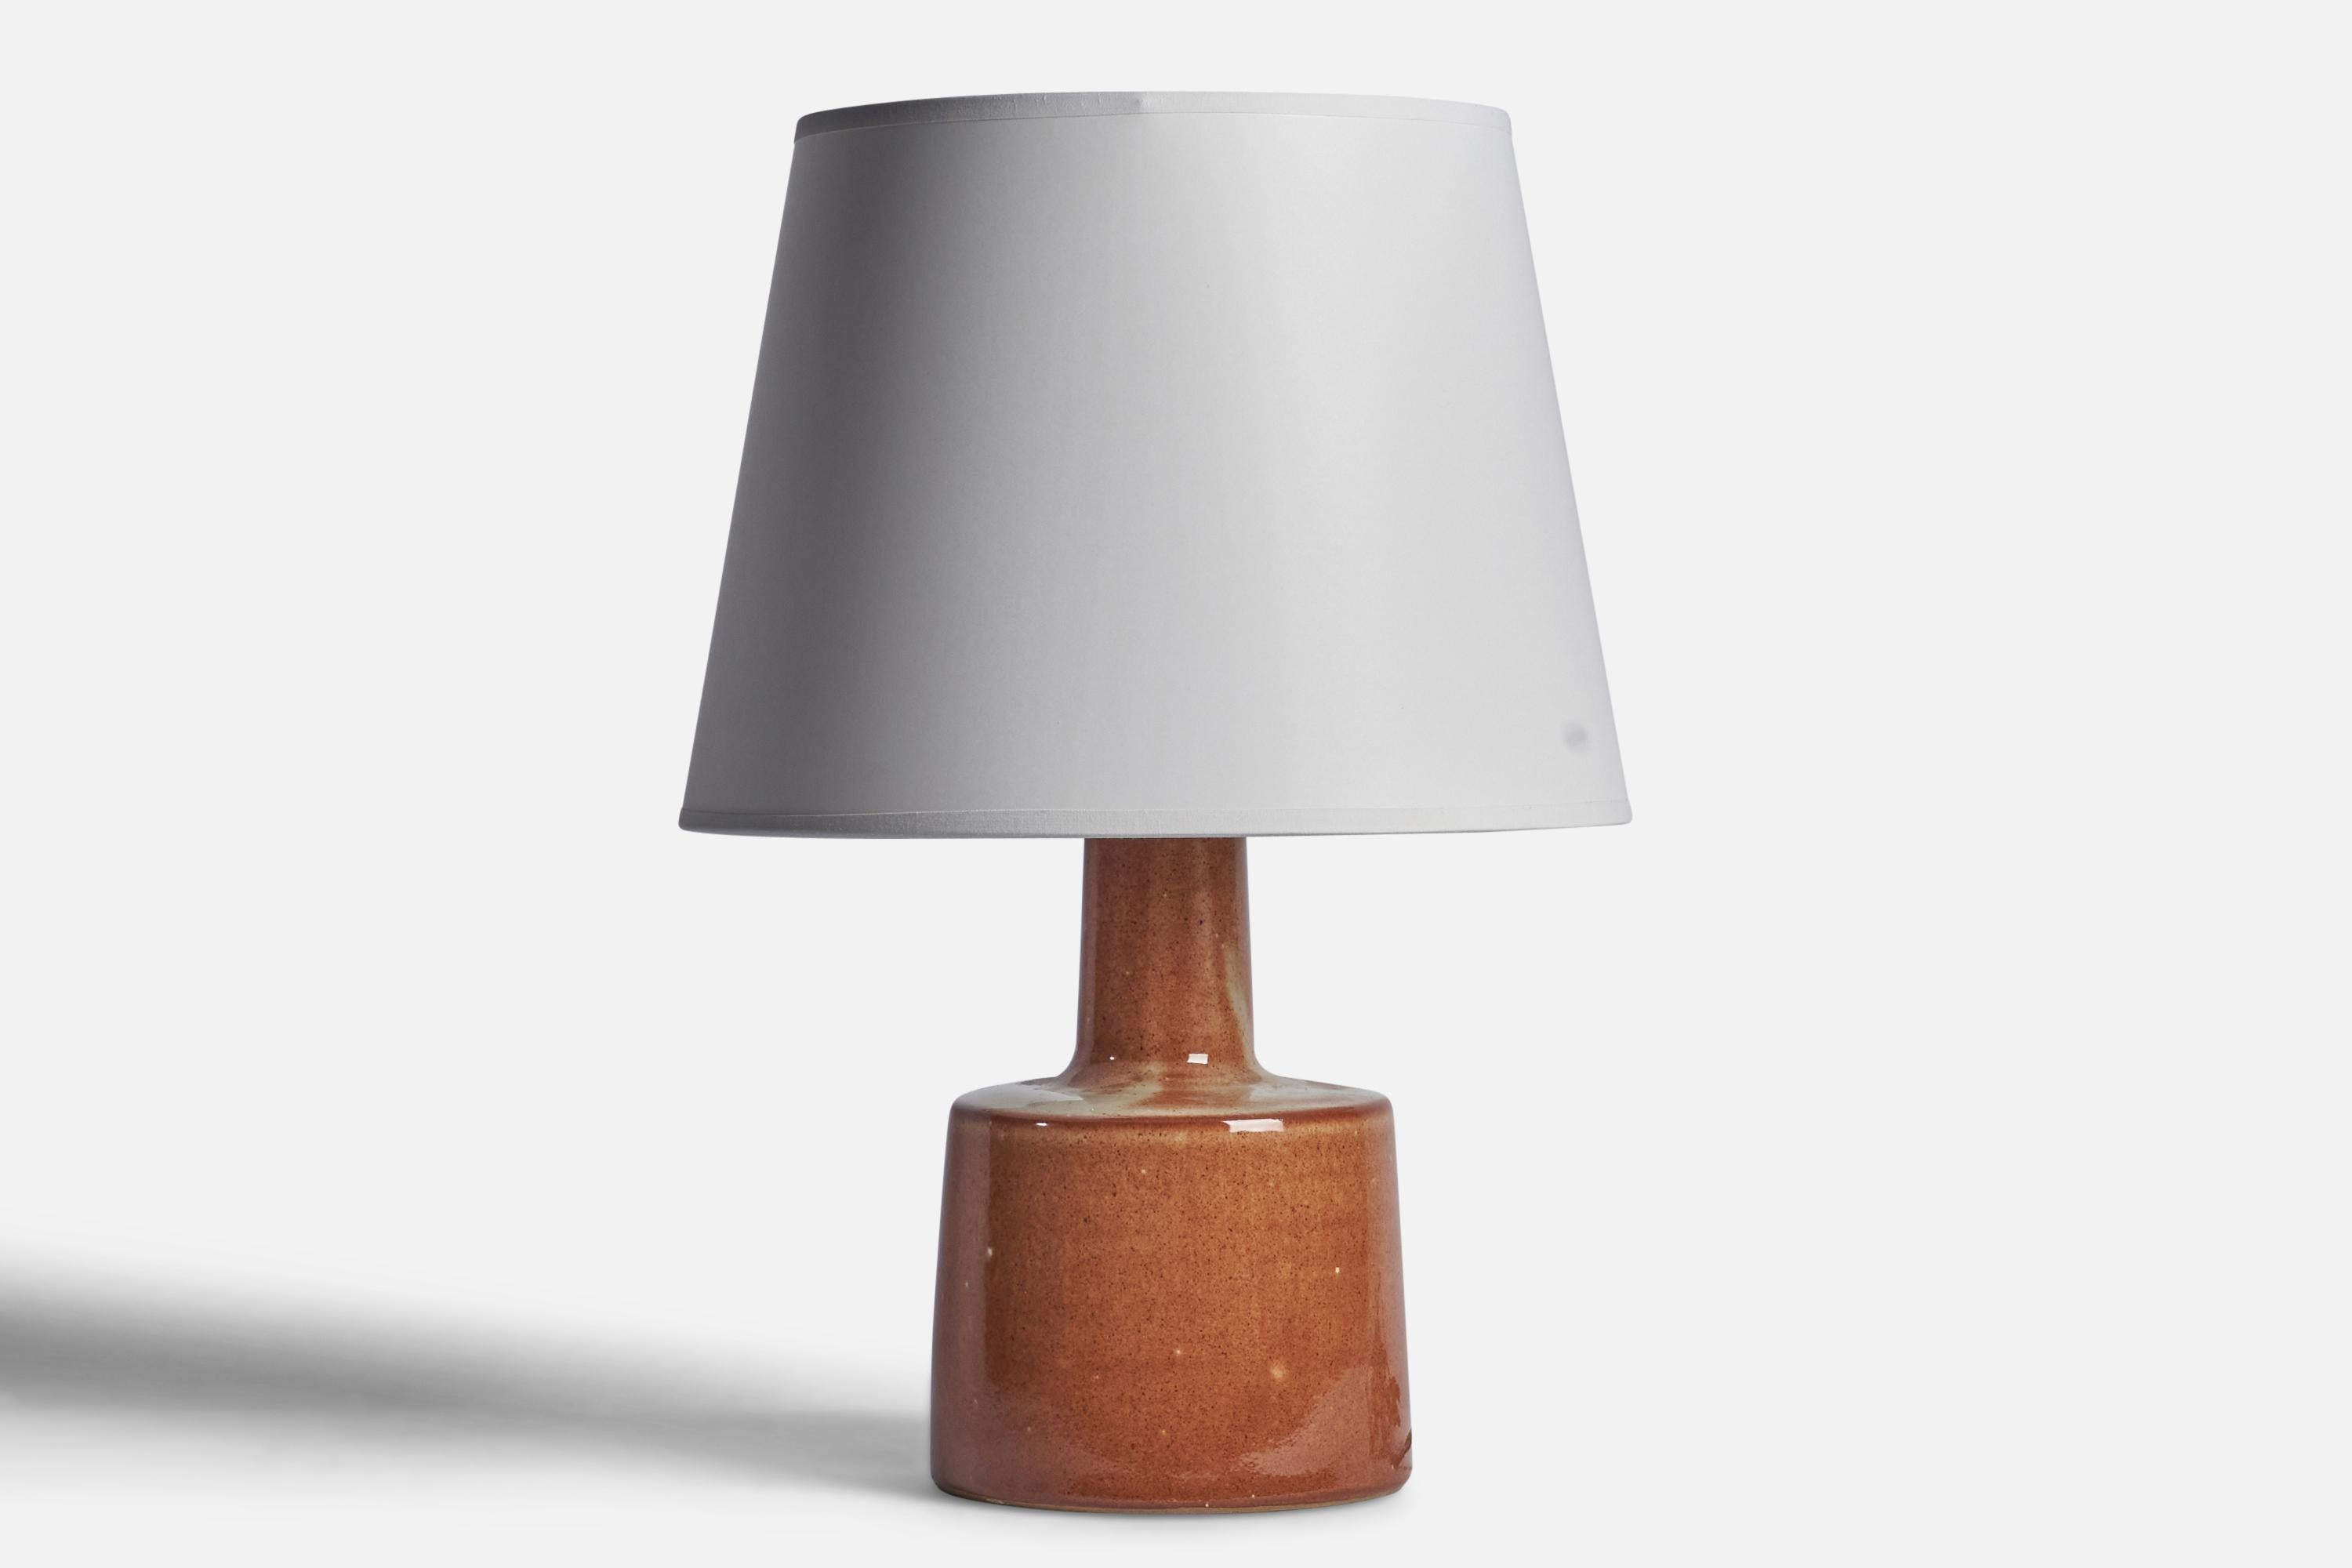 Lampe de table en céramique émaillée brune conçue par Jane & Gordon Martz et produite par Marshall Studios, États-Unis, années 1960.

Dimensions de la lampe (pouces) : 12